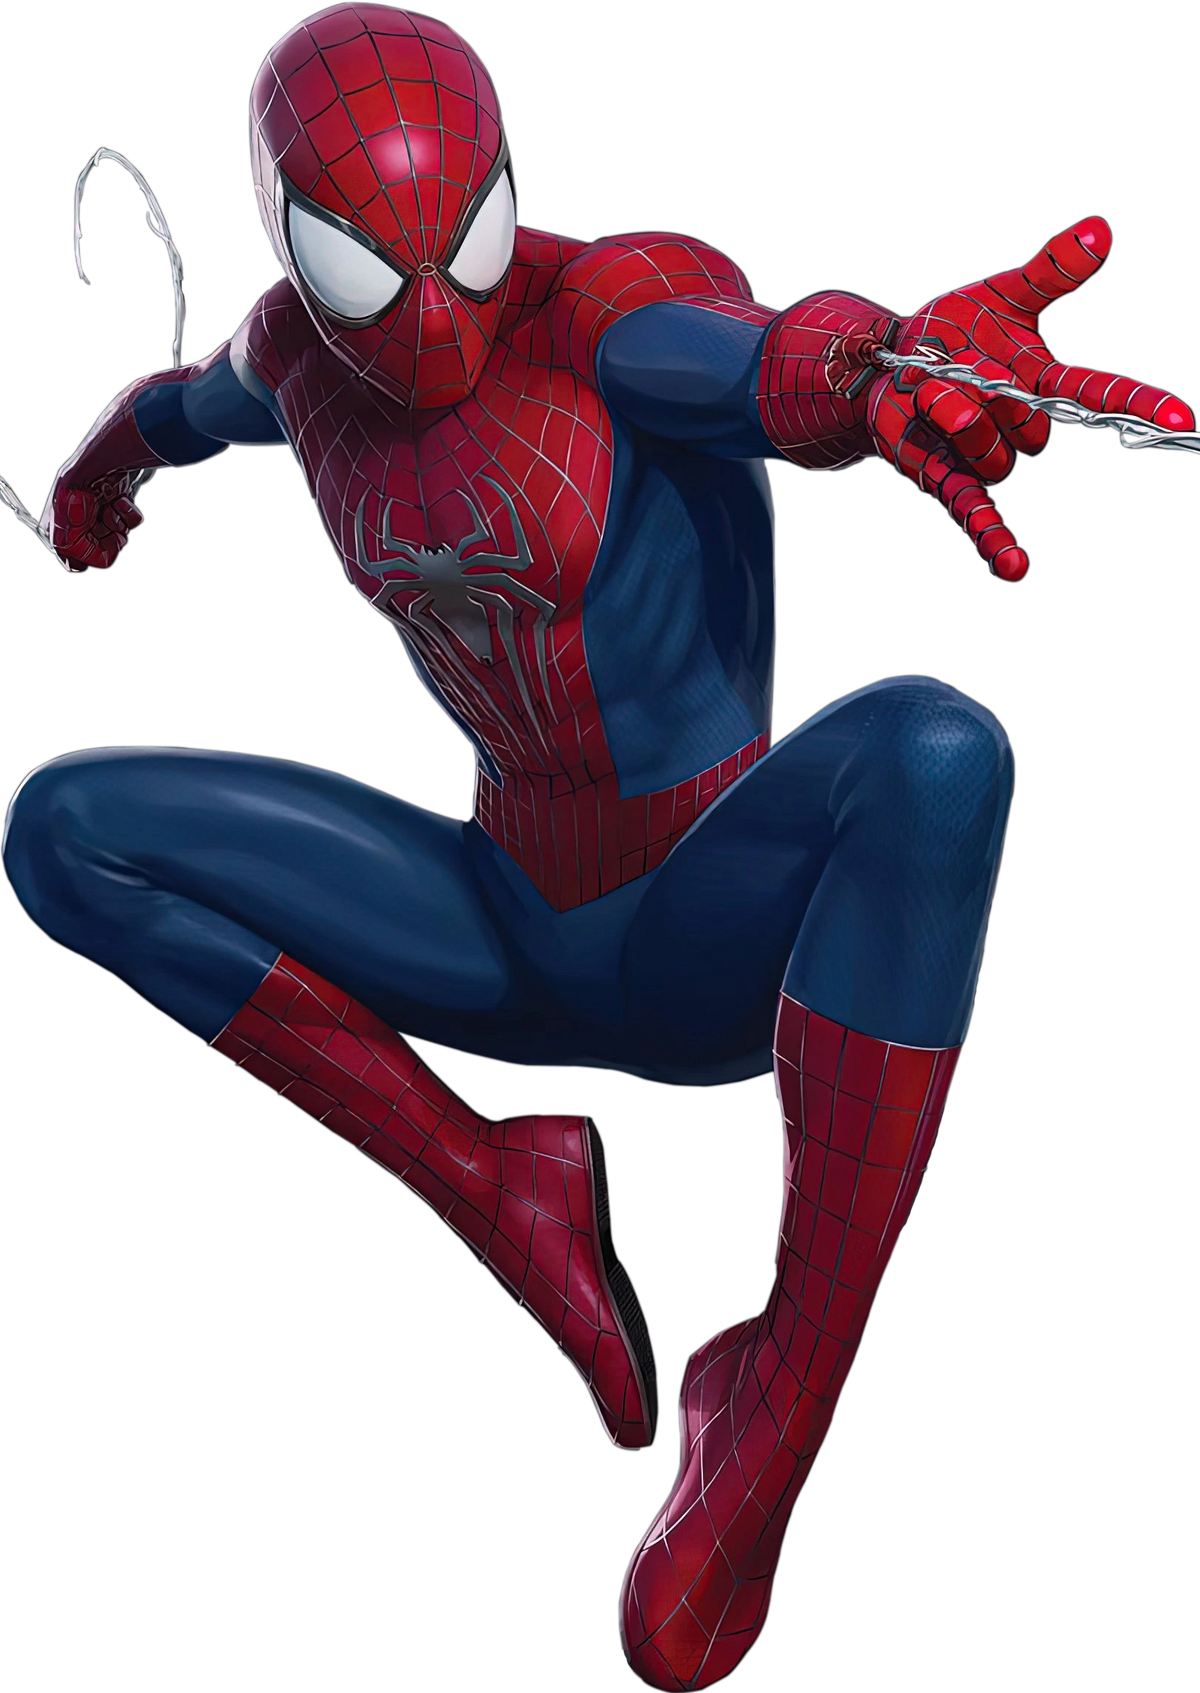 Spider-Man (The Amazing Spider-Man Films) | Heroes Wiki | Fandom